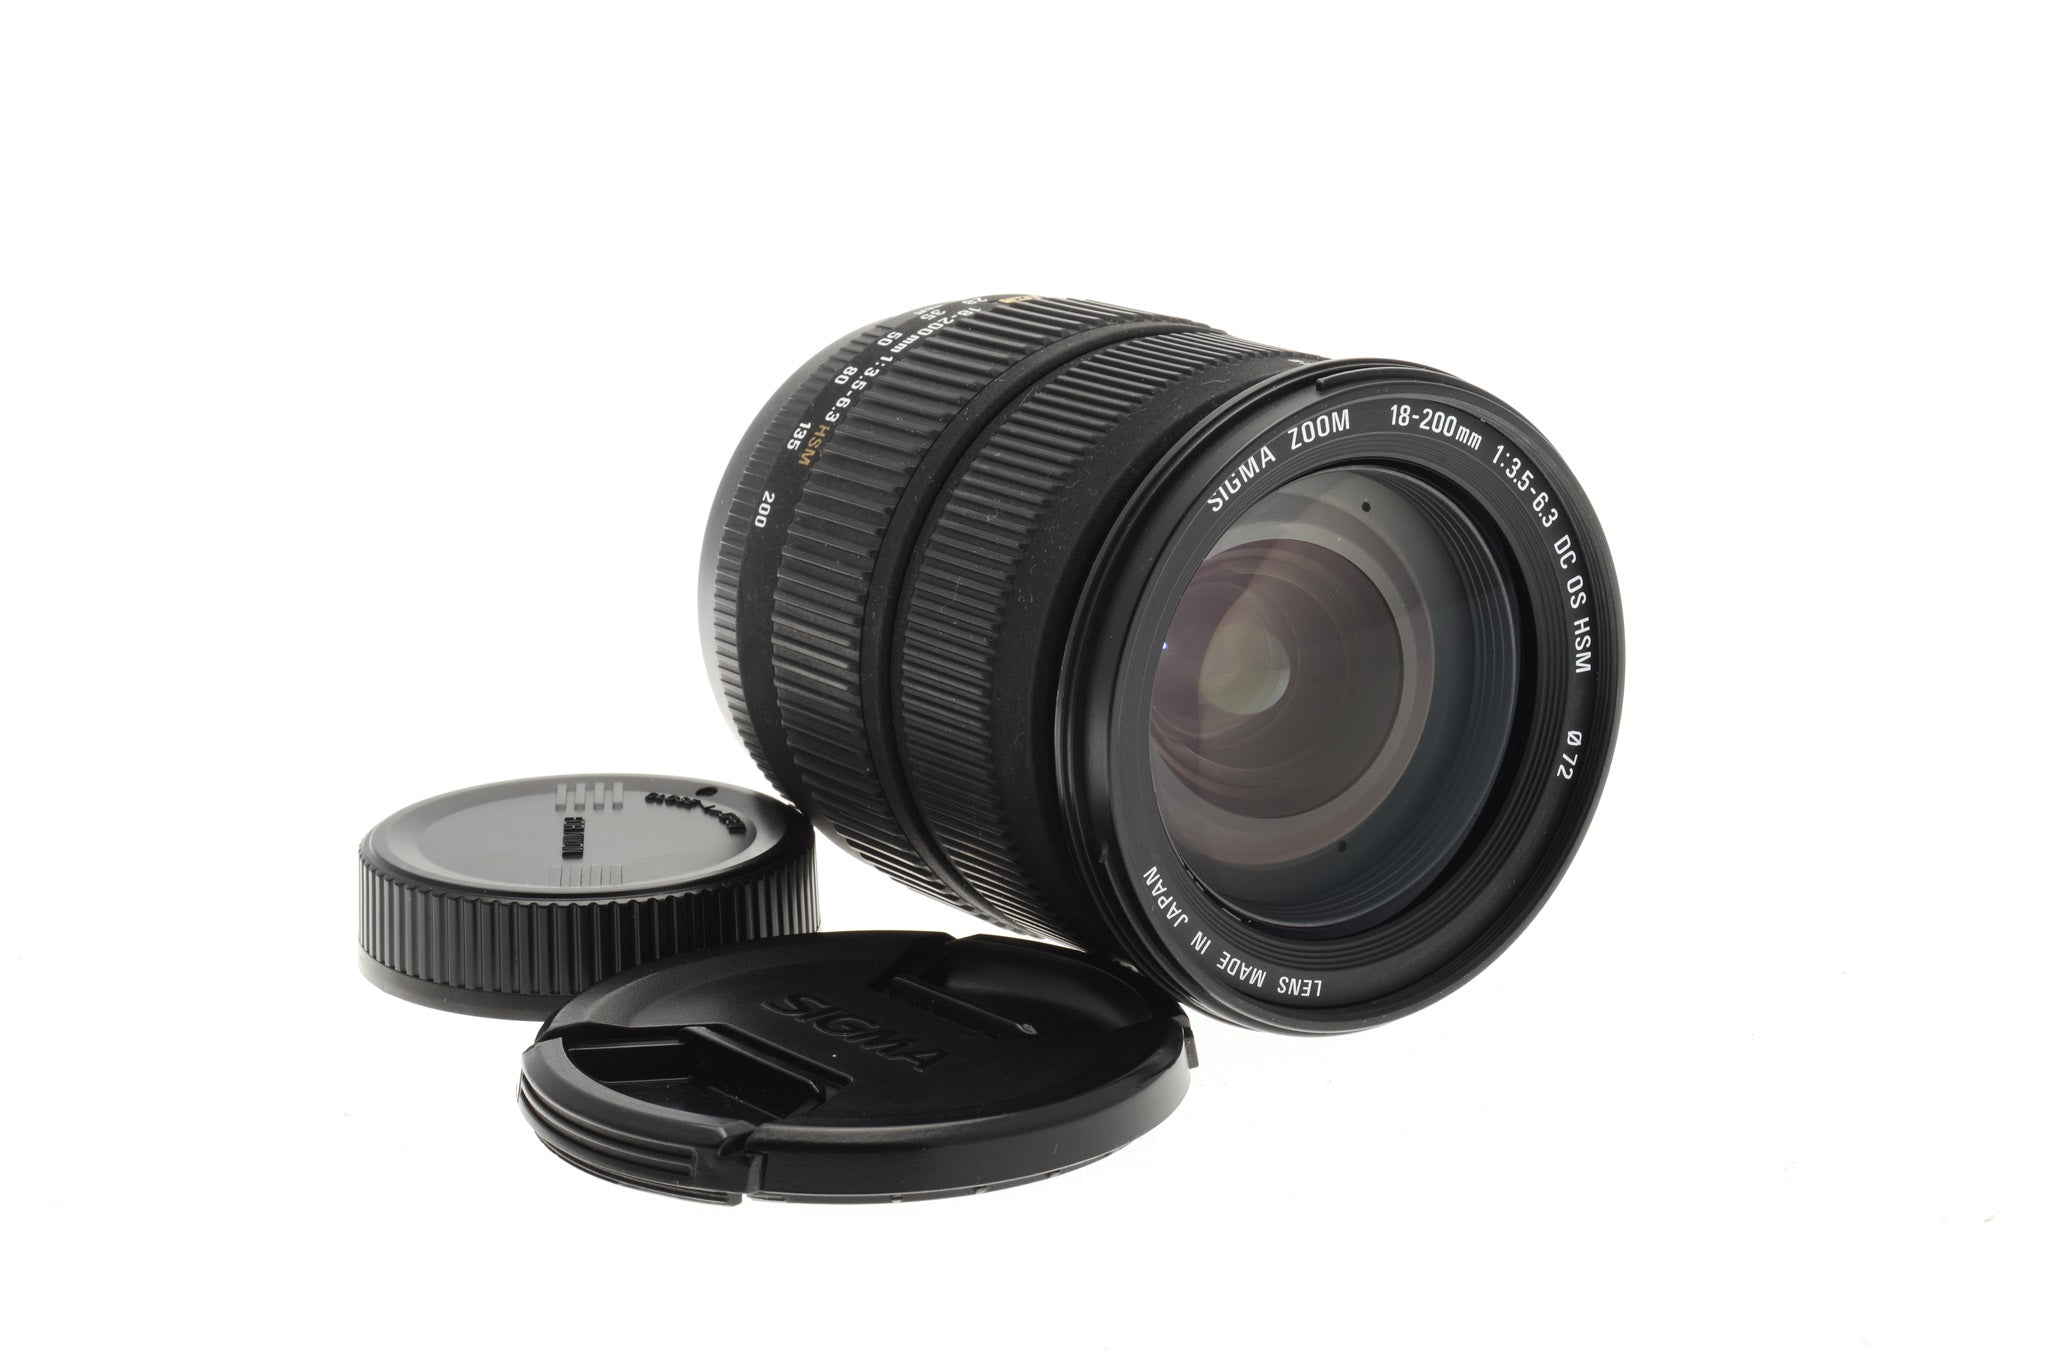 Sigma 18-200mm f3.5-6.3 DC OS HSM Lens – Kamerastore